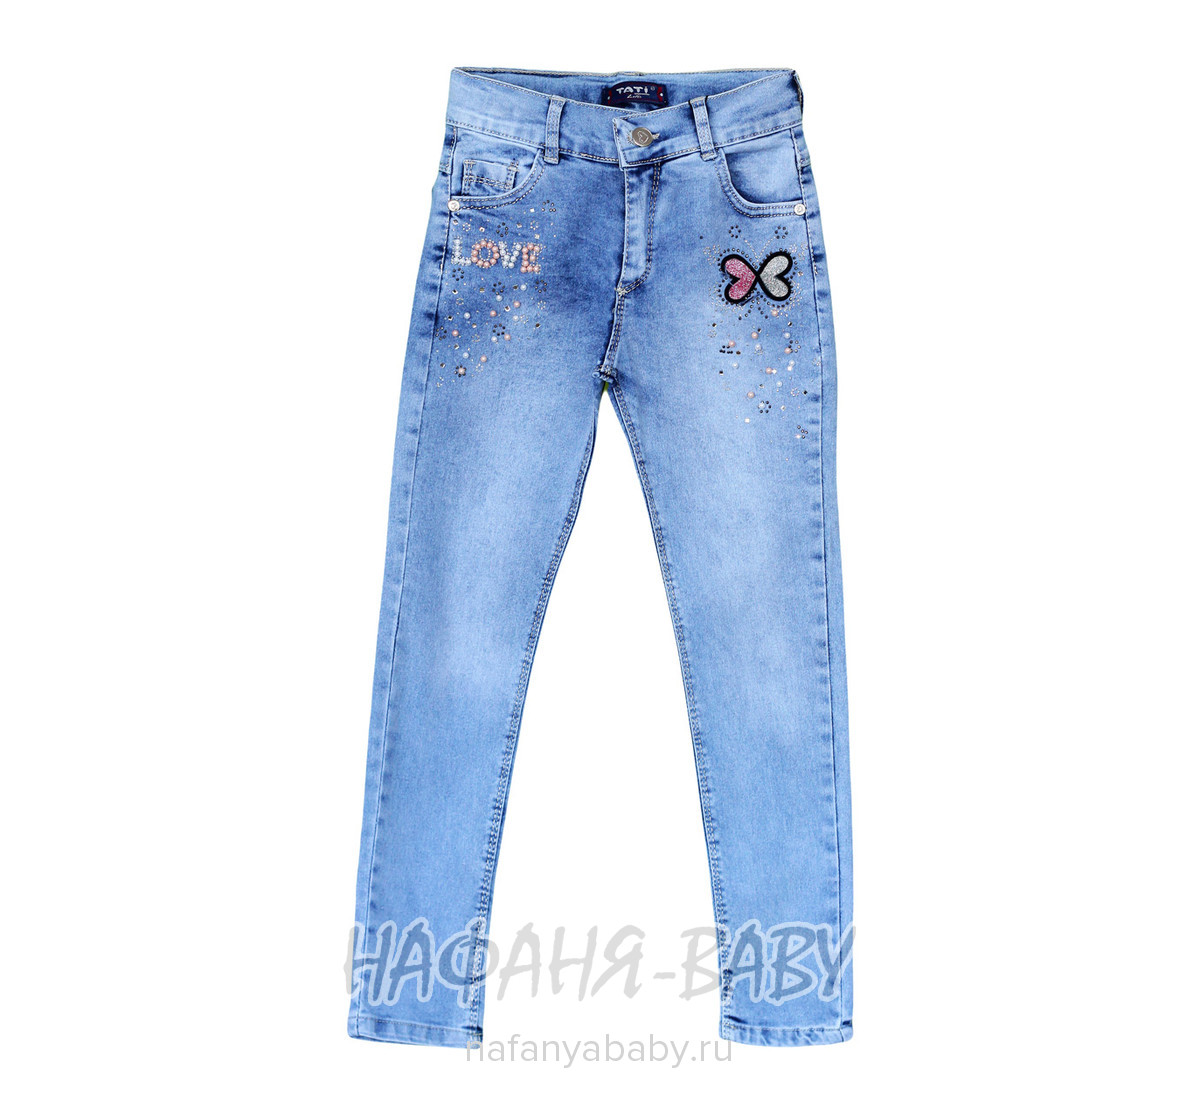 Подростковые джинсы TATI Jeans арт: 8988, 10-15 лет, 5-9 лет, оптом Турция